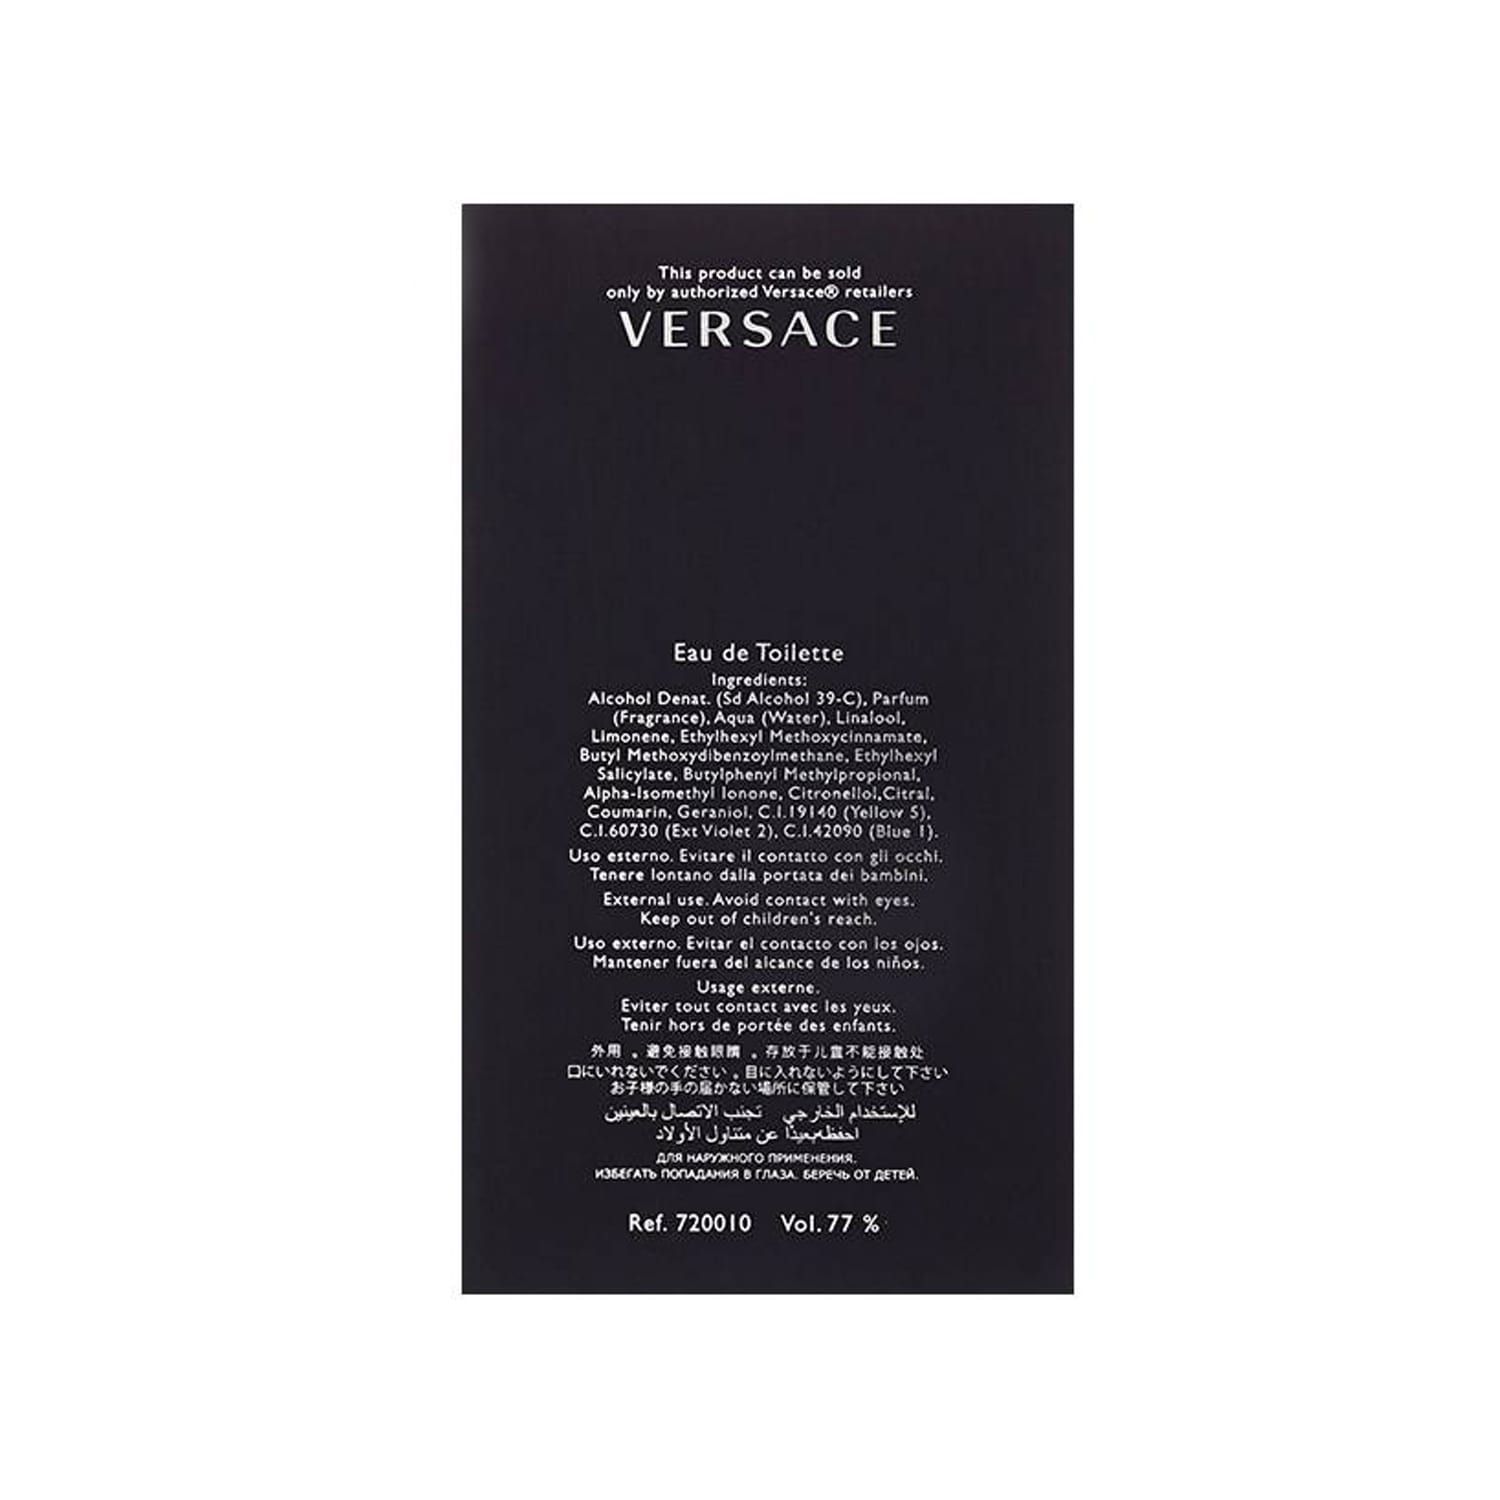 عطر مردانه ورساچه مدل Versace Pour Homme حجم 100 میلی لیتر